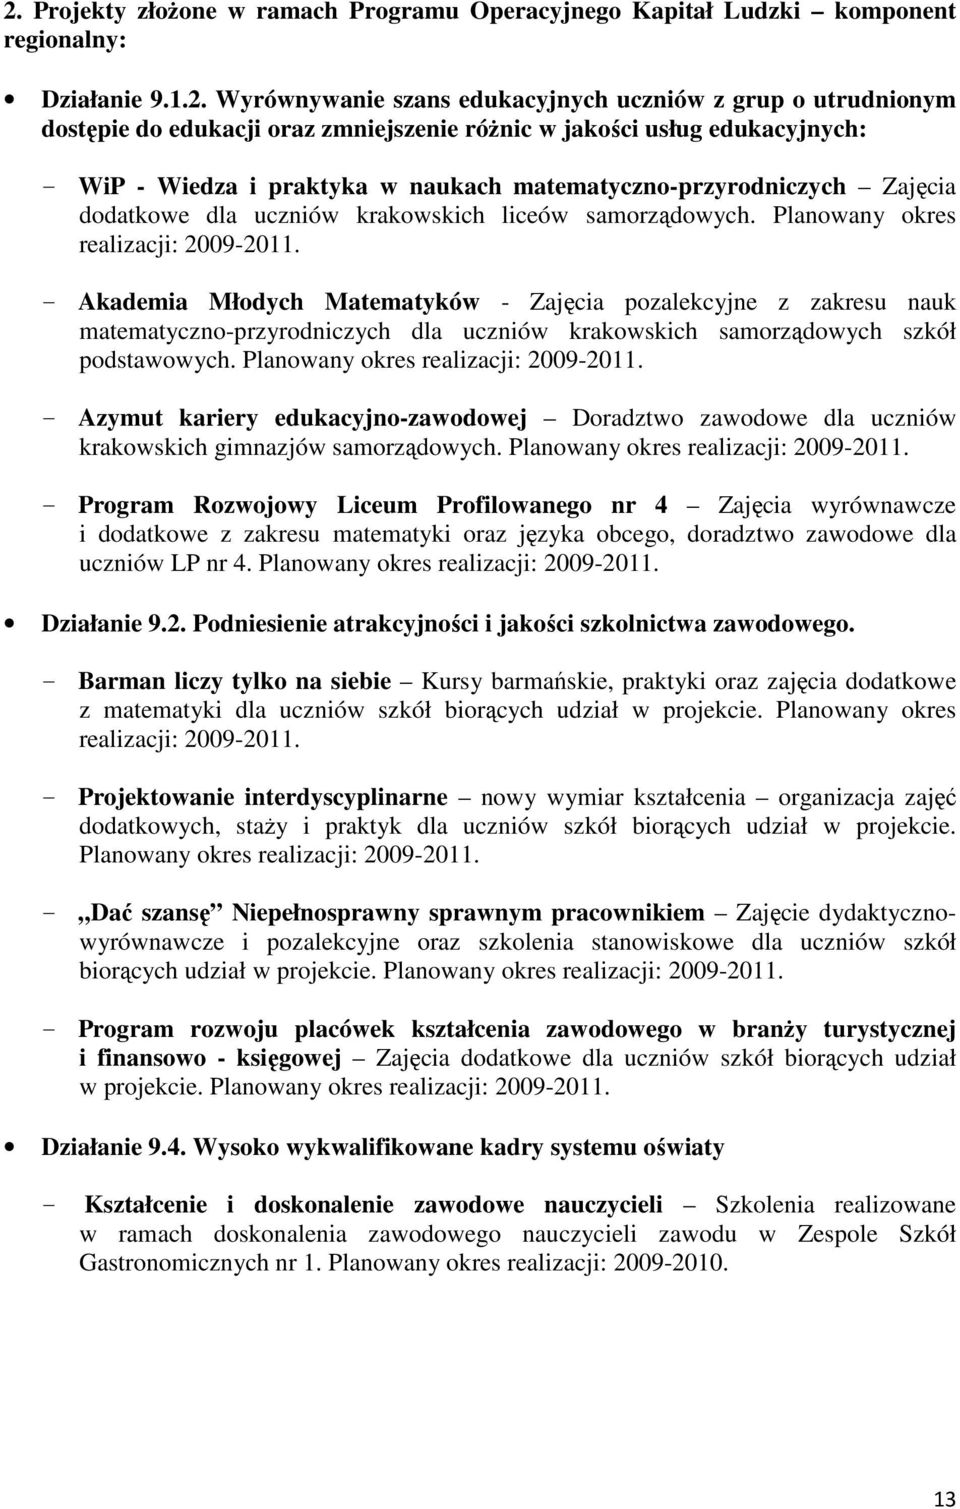 Planowany okres realizacji: 2009-2011. - Akademia Młodych Matematyków - Zajęcia pozalekcyjne z zakresu nauk matematyczno-przyrodniczych dla uczniów krakowskich samorządowych szkół podstawowych.